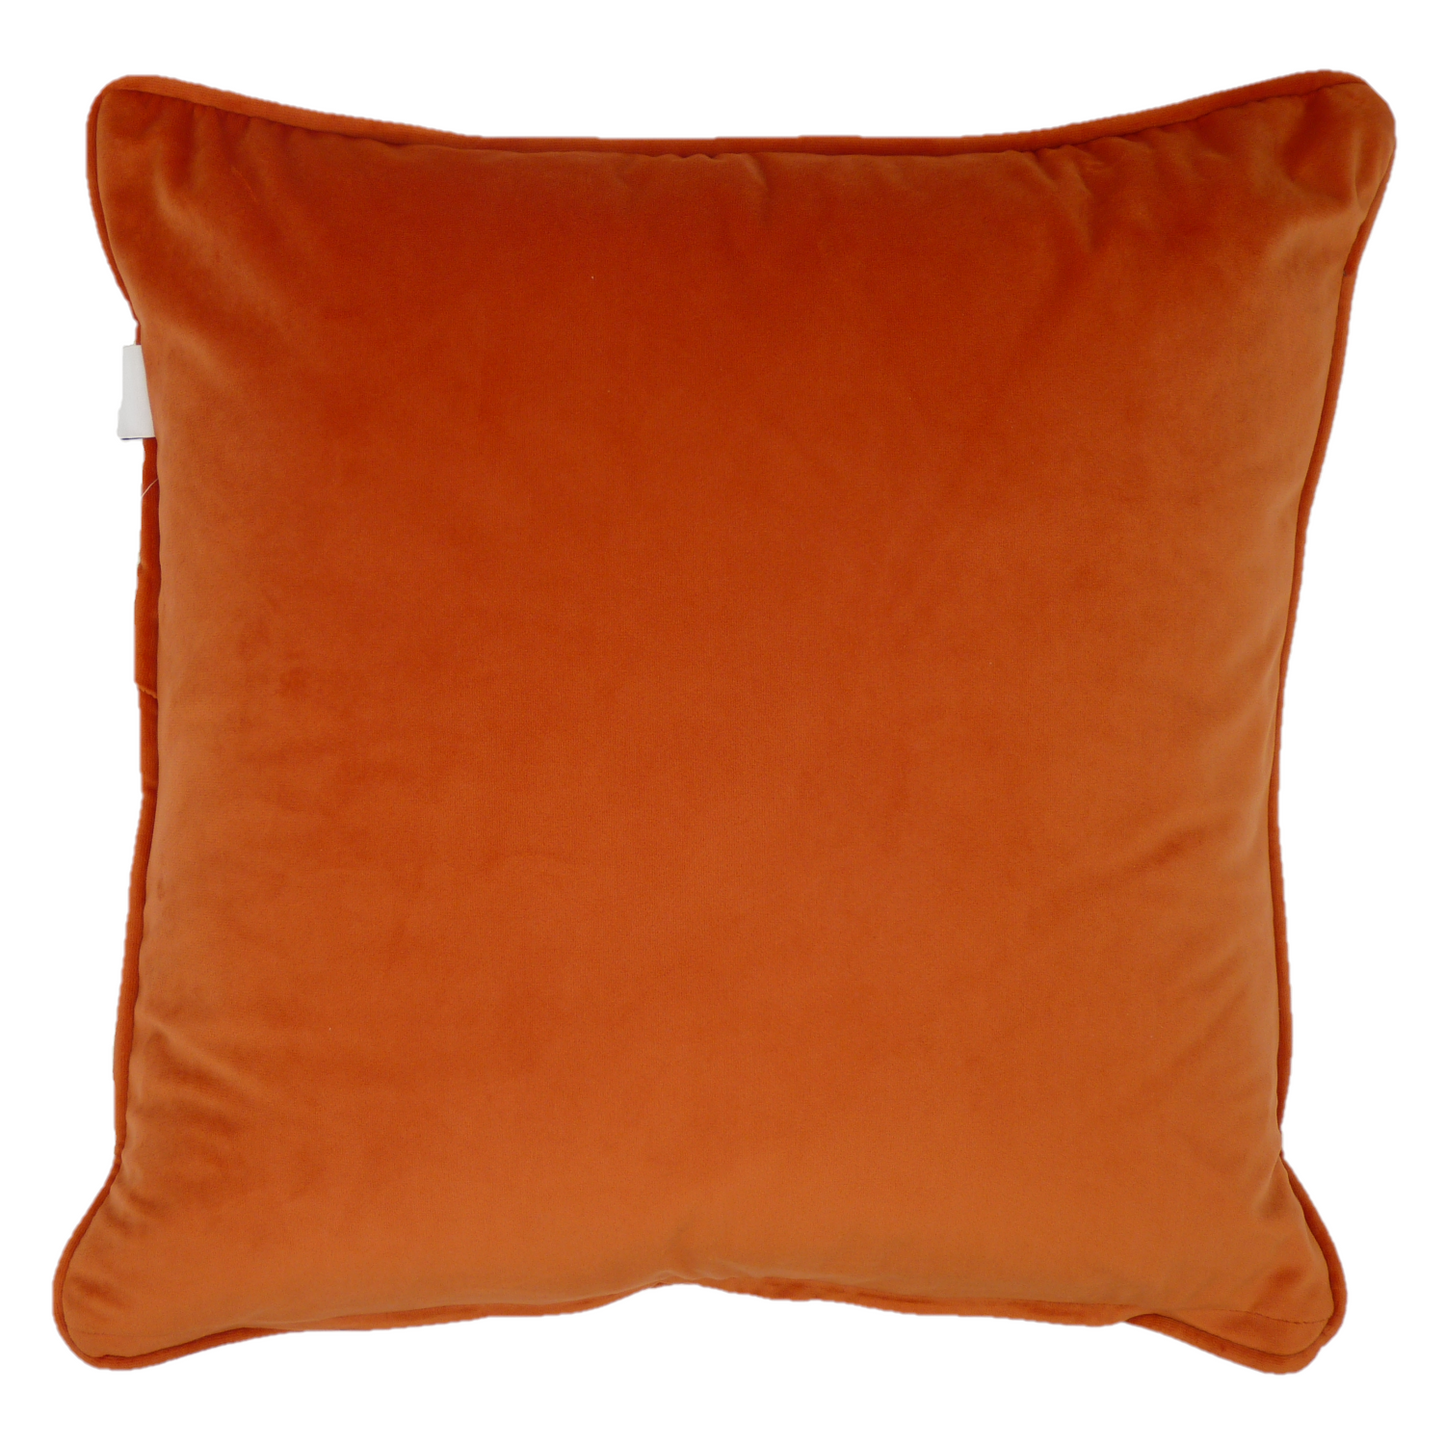 Polaris Orange Textured Weave Velvet Cushion Cover (45cm x 45cm)